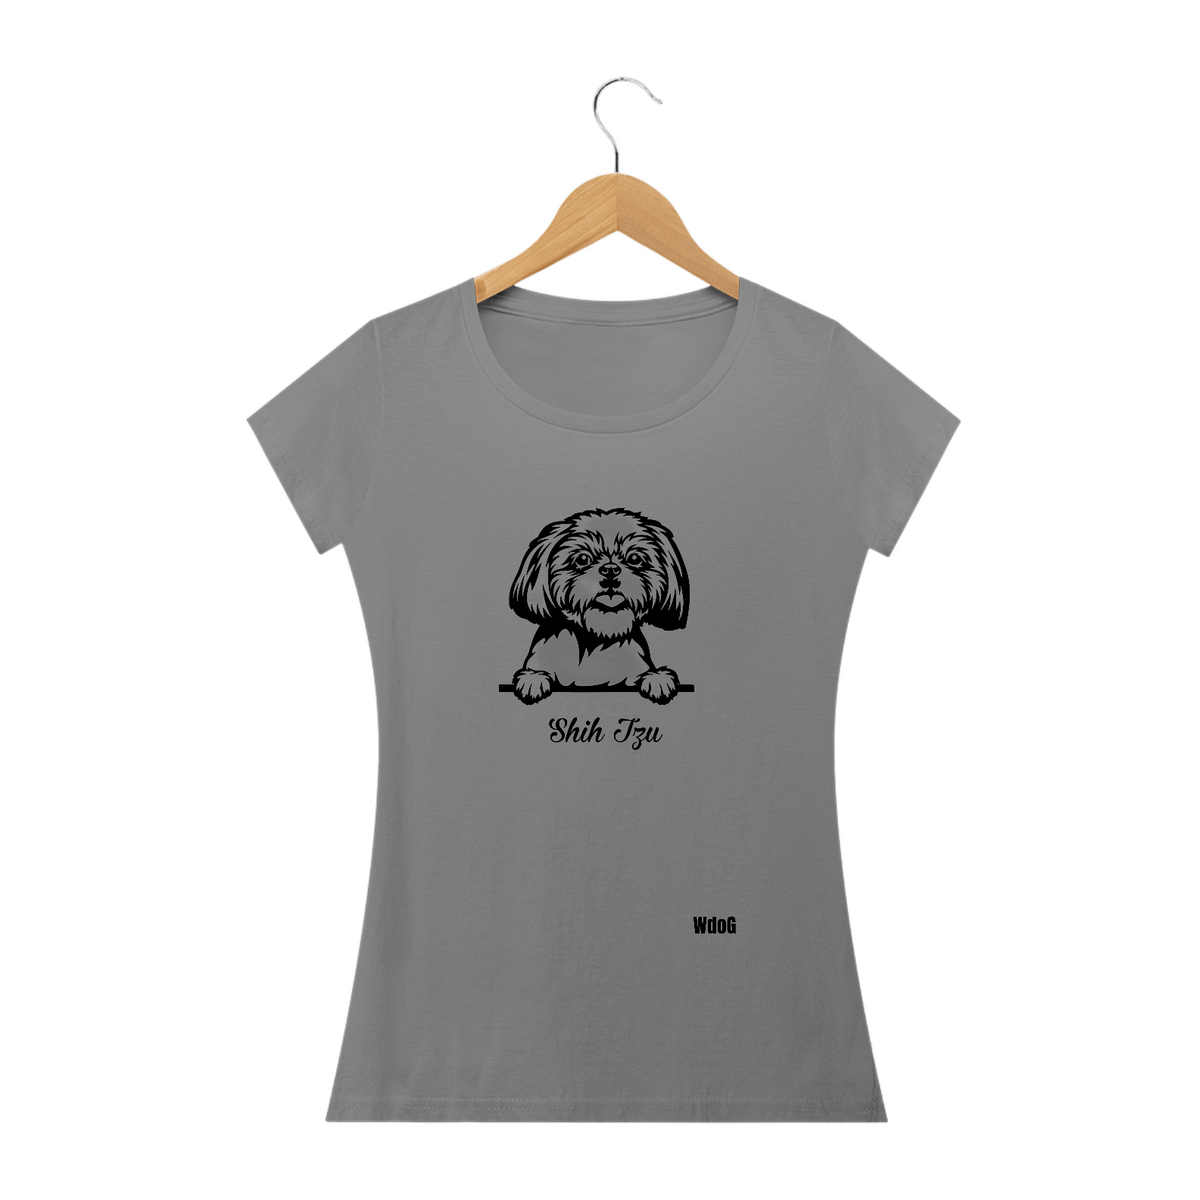 Nome do produto: Shih tzu Vazado / T-shirt Woman Shih tzu